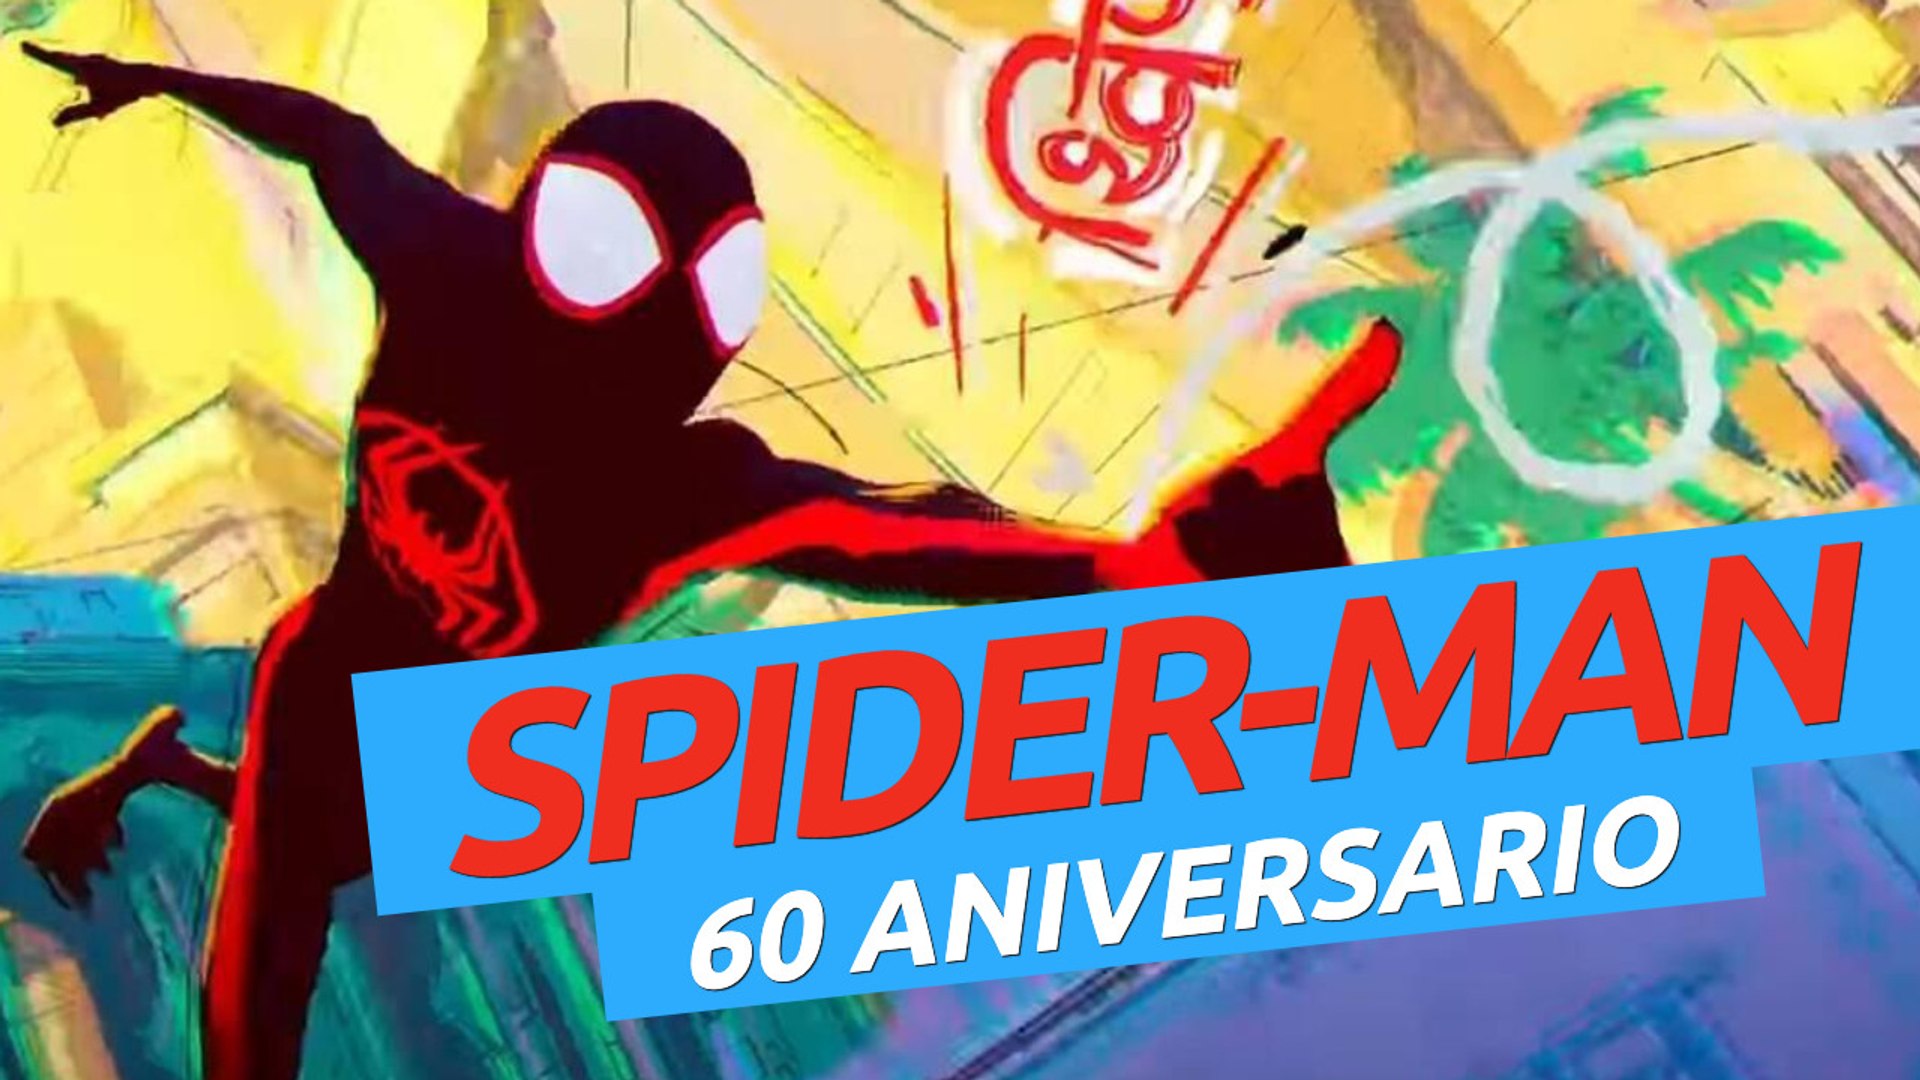 60 Aniversario de Spider-Man: ¡las curiosidades más locas! - Vídeo  Dailymotion